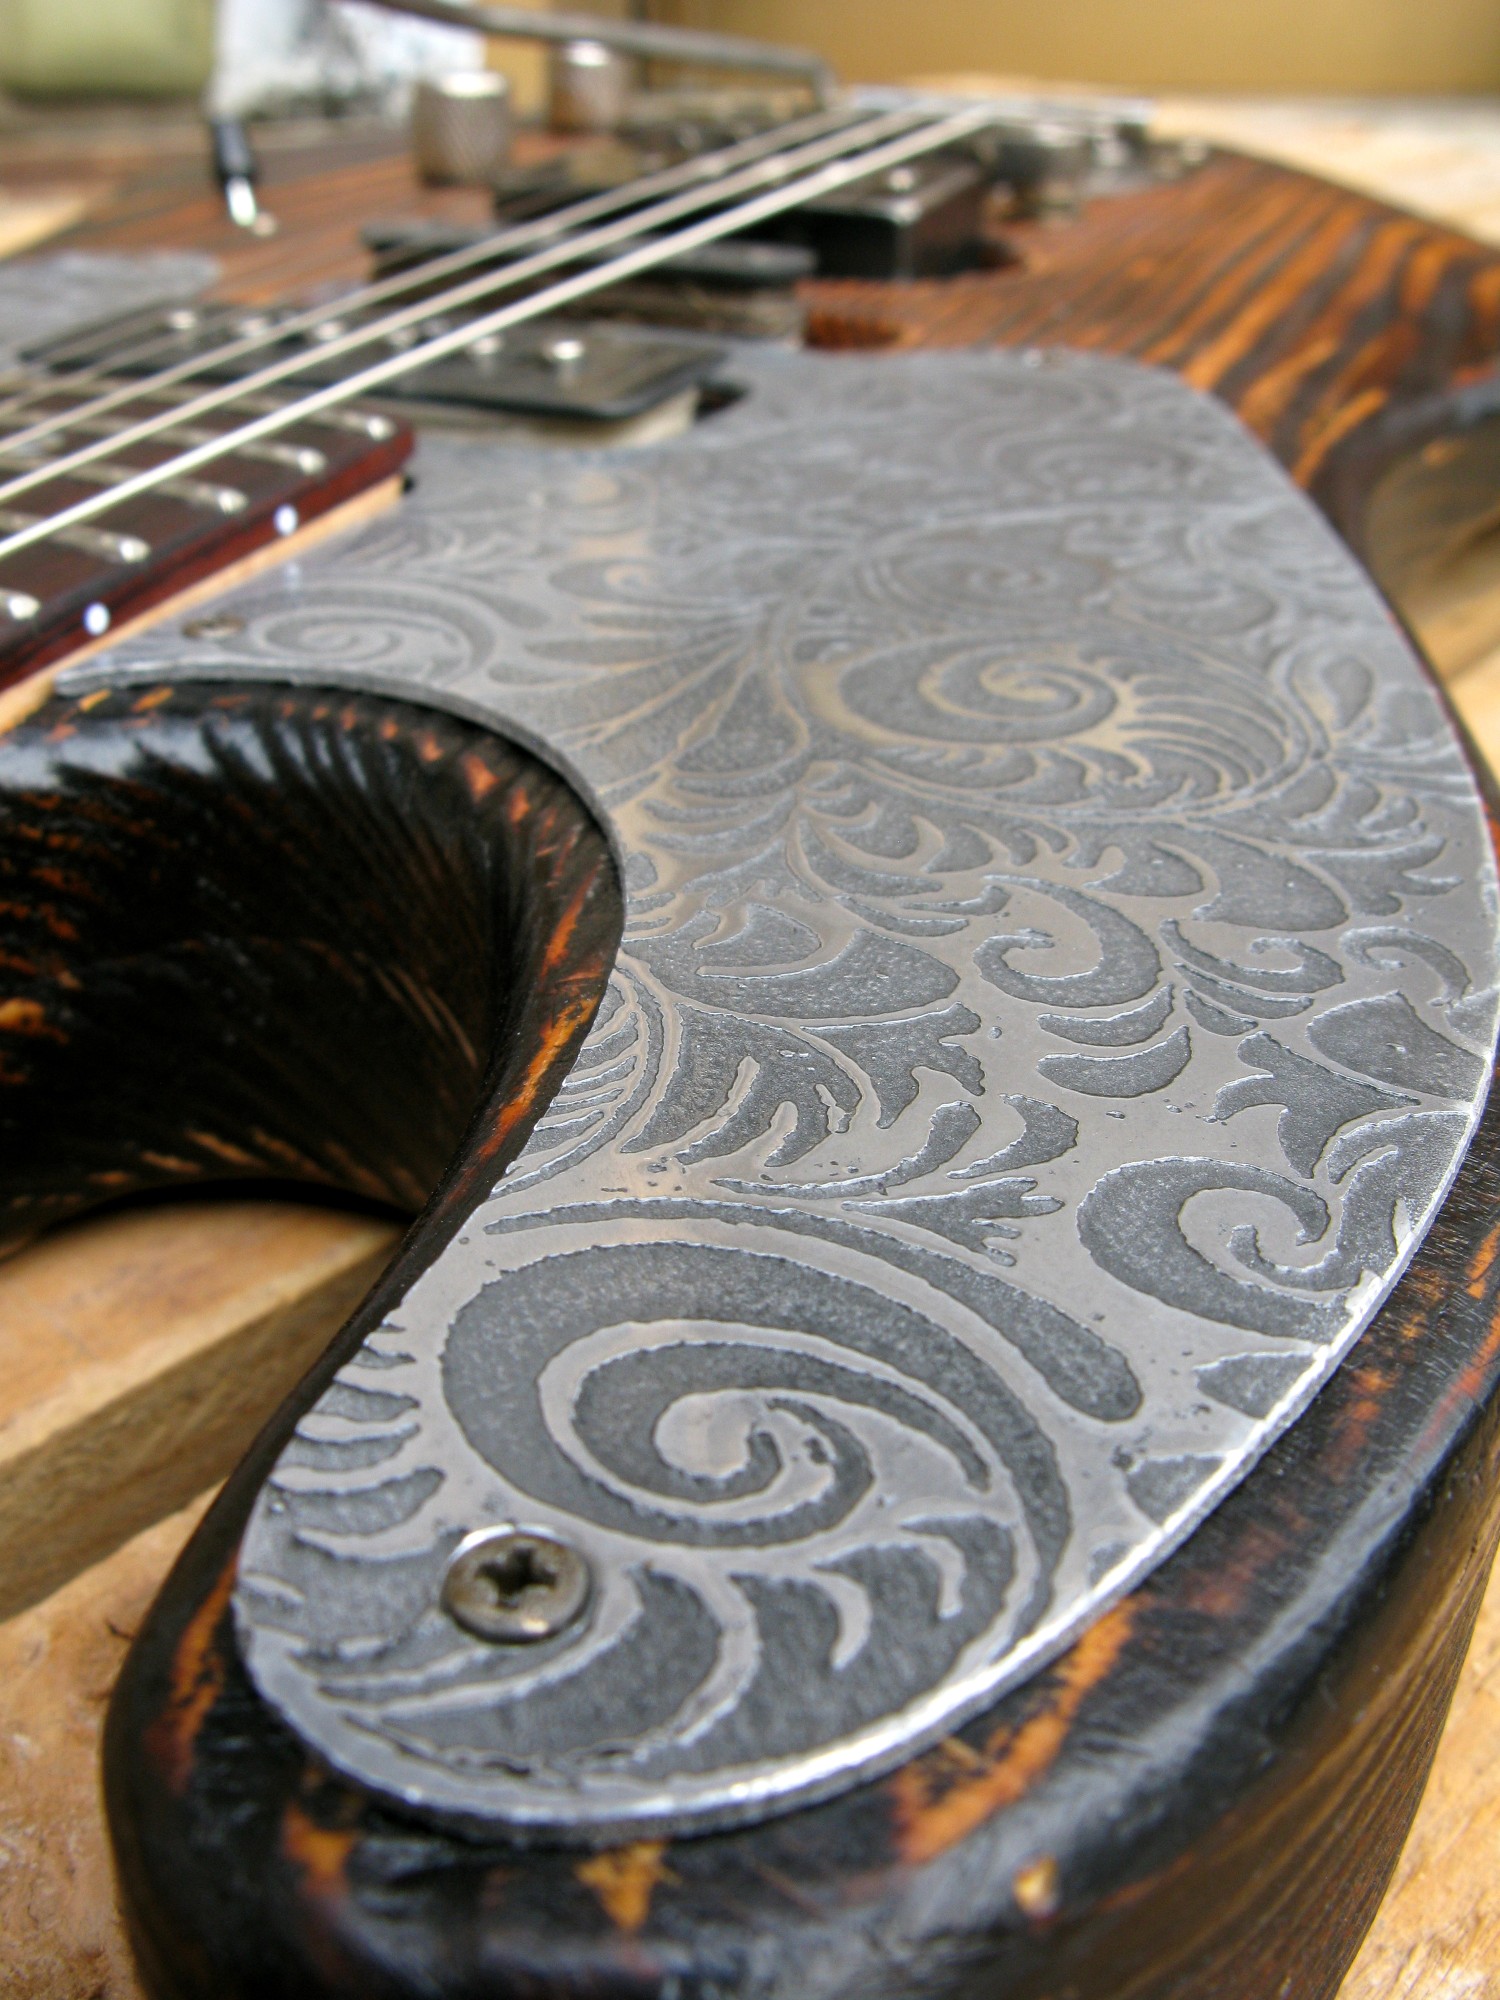 Chitarra modello Stratocaster, body in pino, manico in frassino, reverse: battipenna inciso